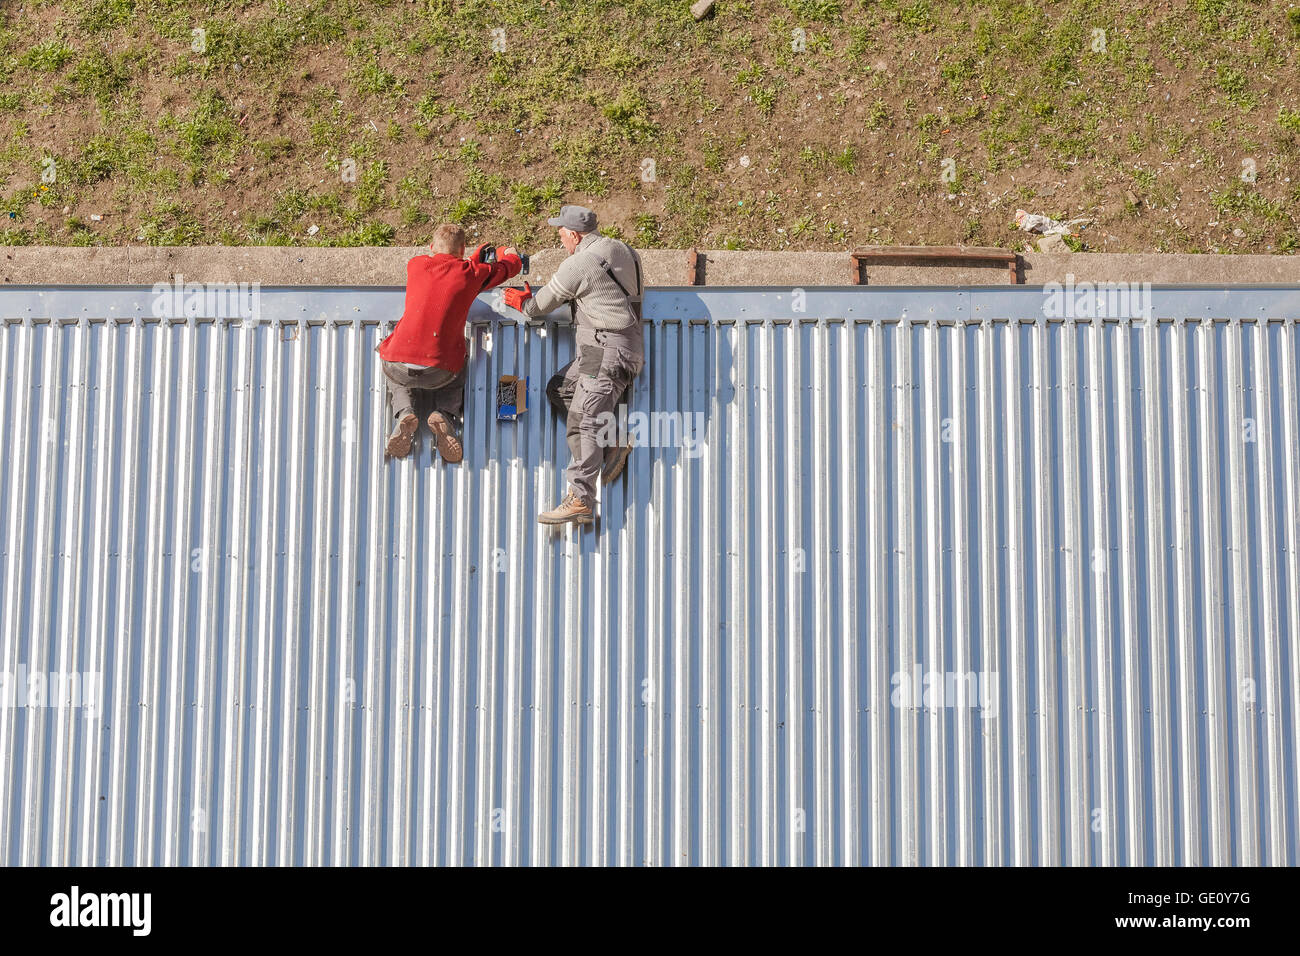 Szczecin, Polonia - Abril 07, 2016: Los trabajadores reparando una tienda techo hecho de planchas de metal corrugado, fotografía tomada desde arriba. Foto de stock